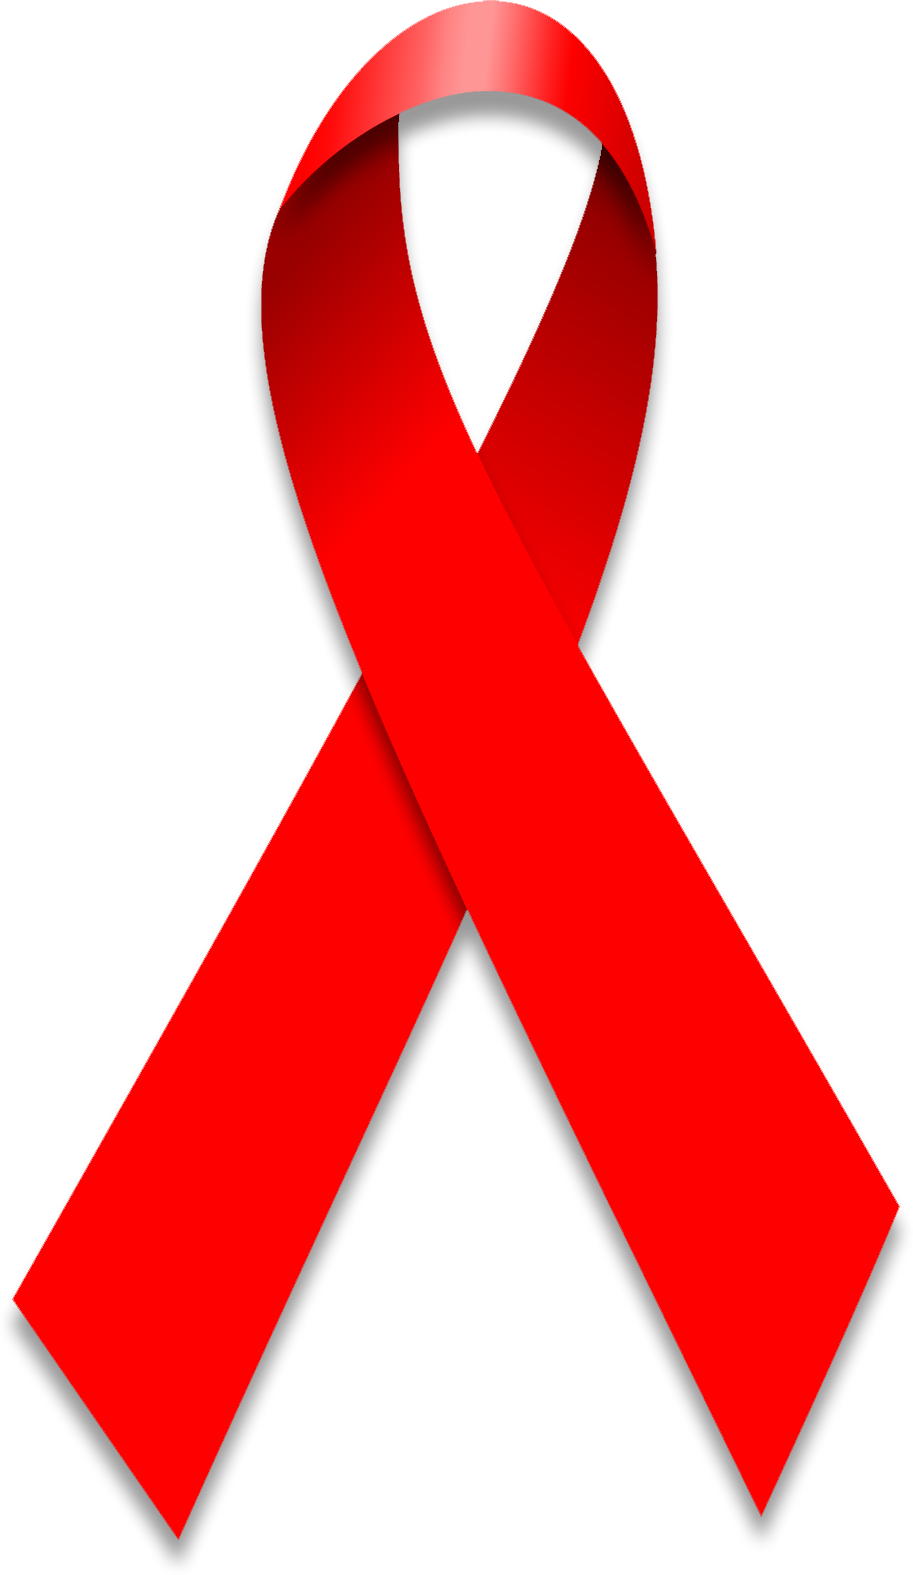 HIV icon